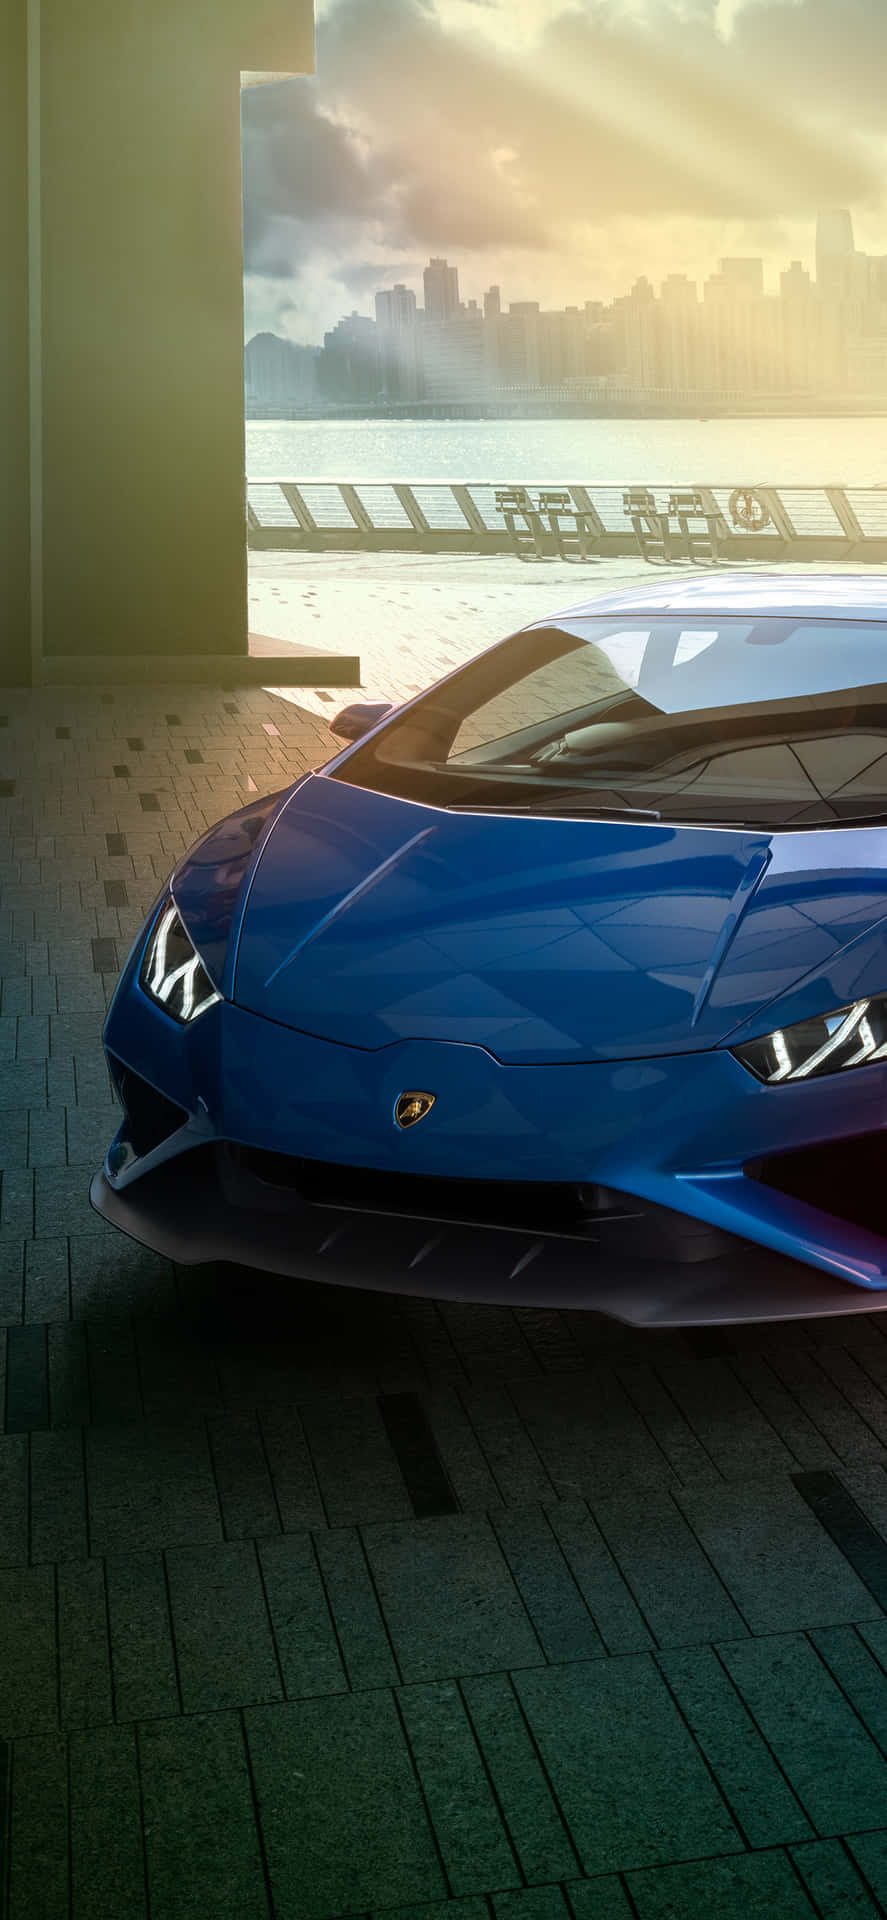 Werfensie Einen Blick Auf Die Schönheit Mit Dem Blauen Lamborghini Iphone Wallpaper